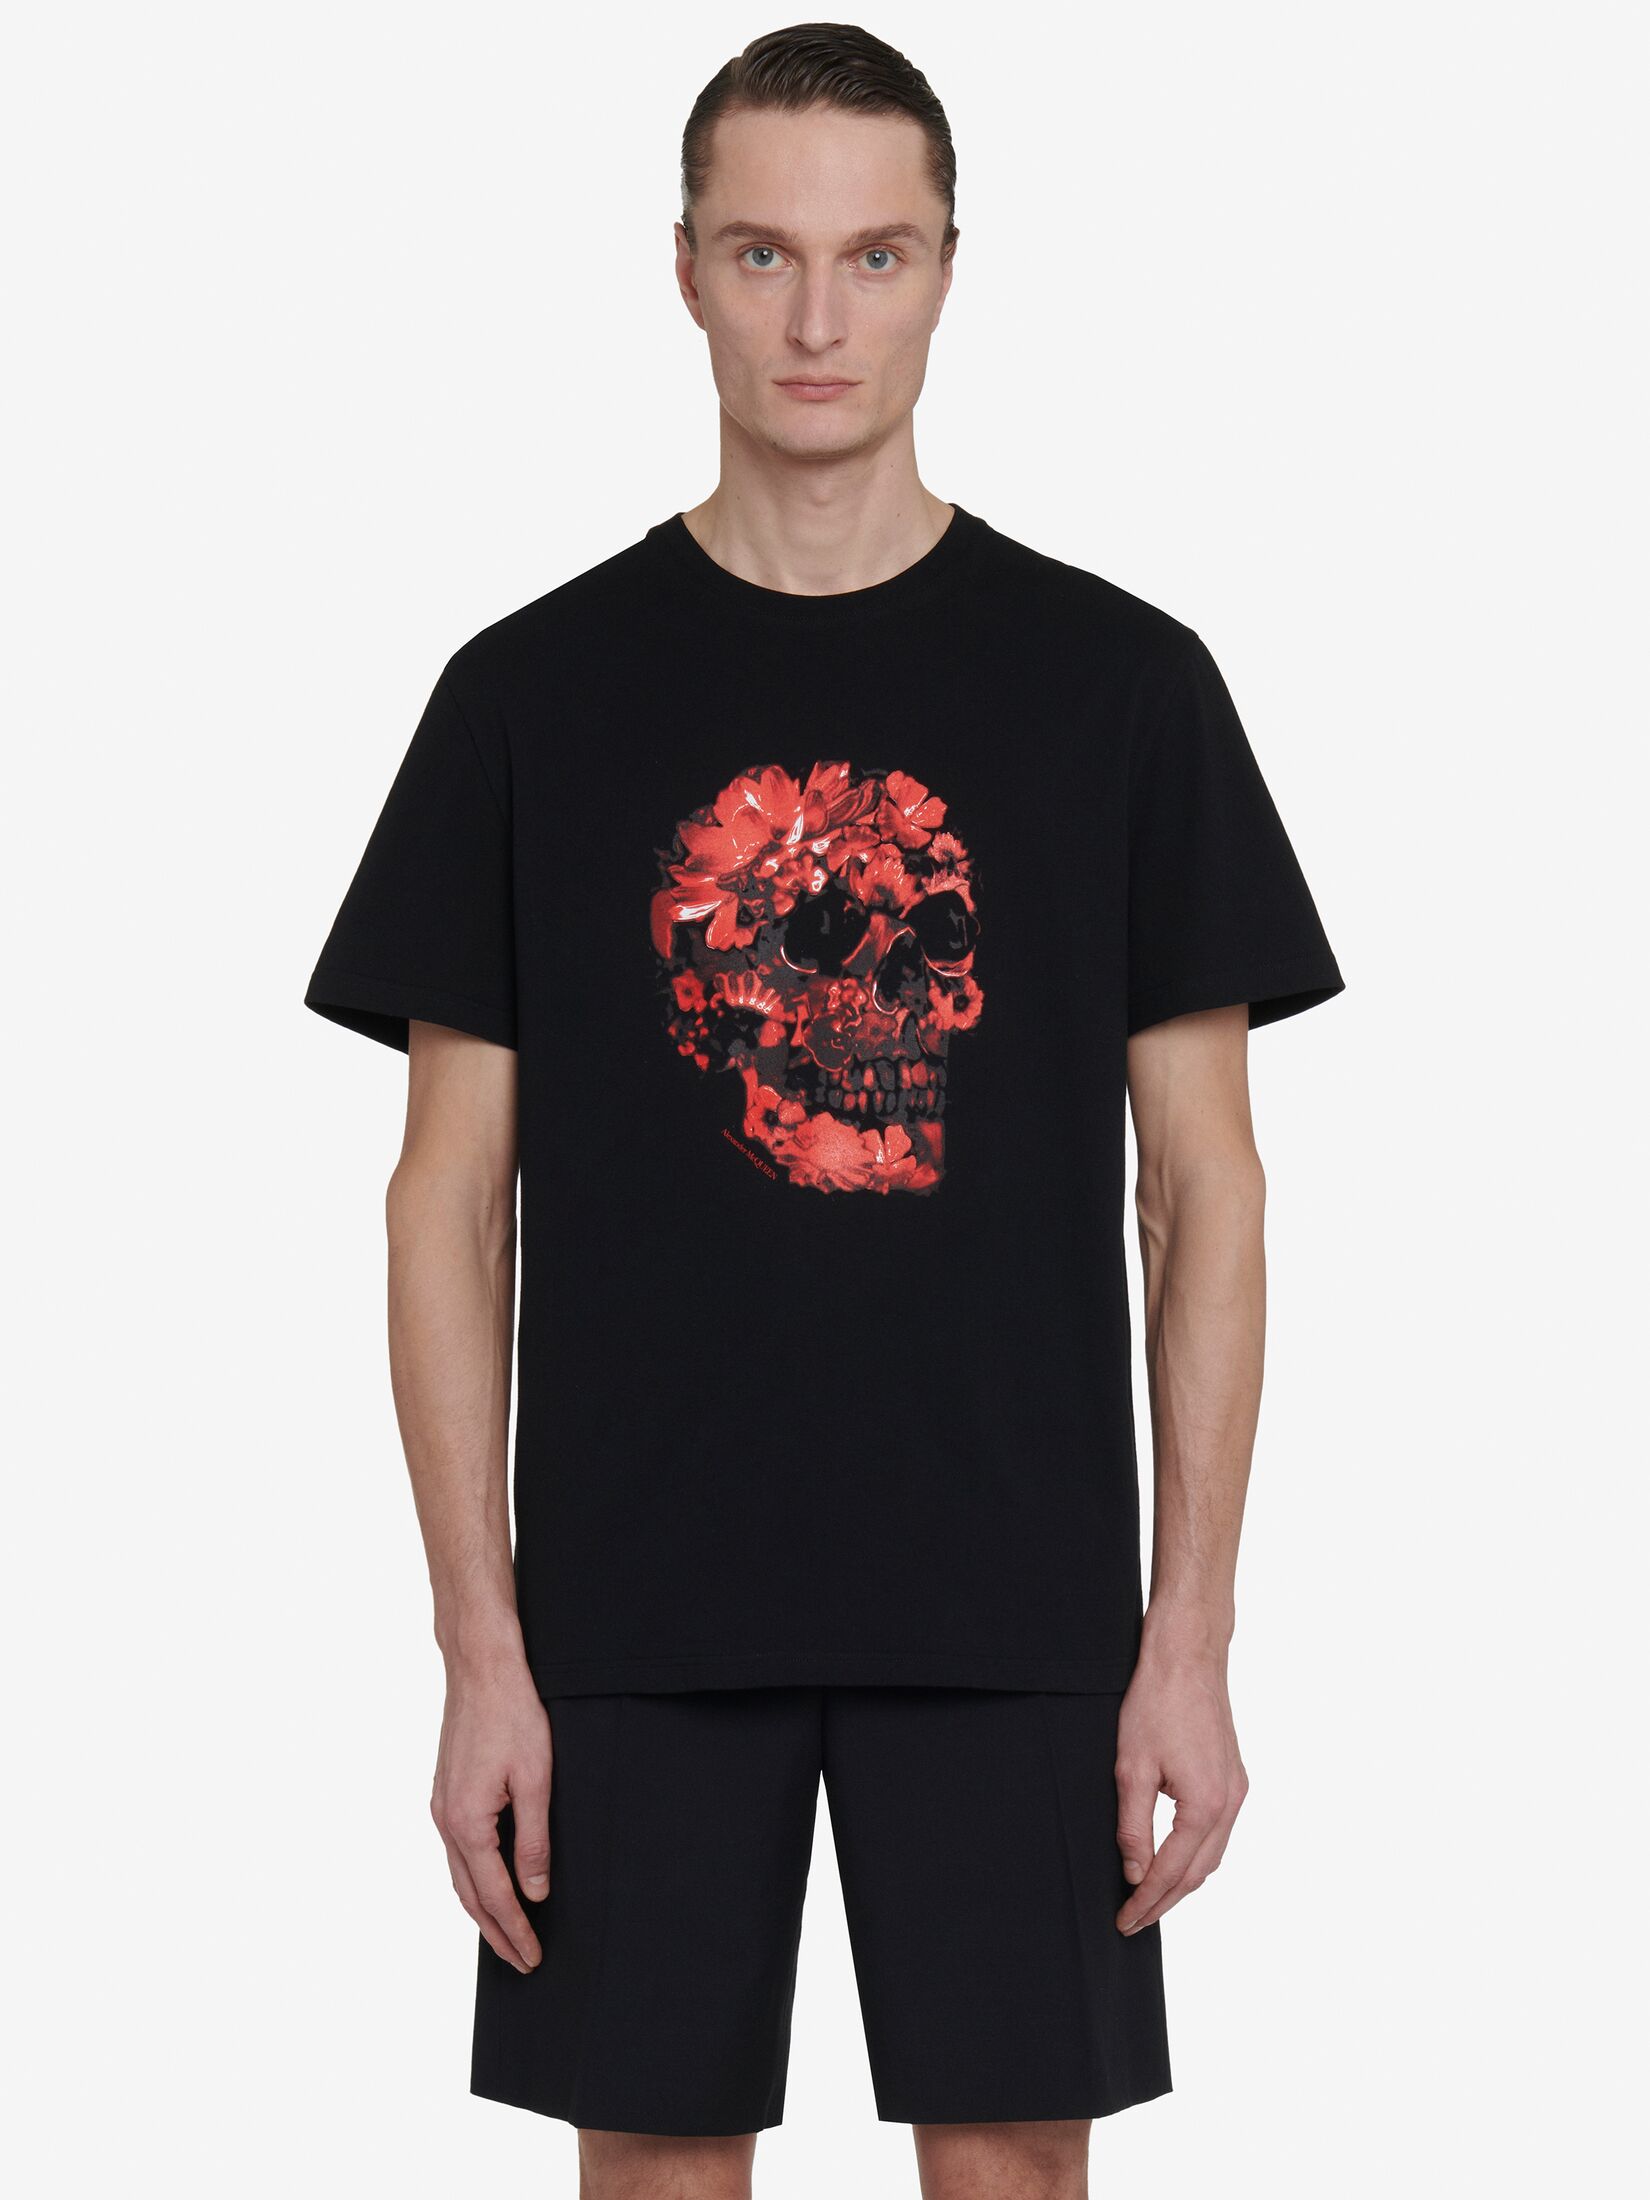 Men's Designer T-Shirts & Sweatshirts | Alexander McQueen UK